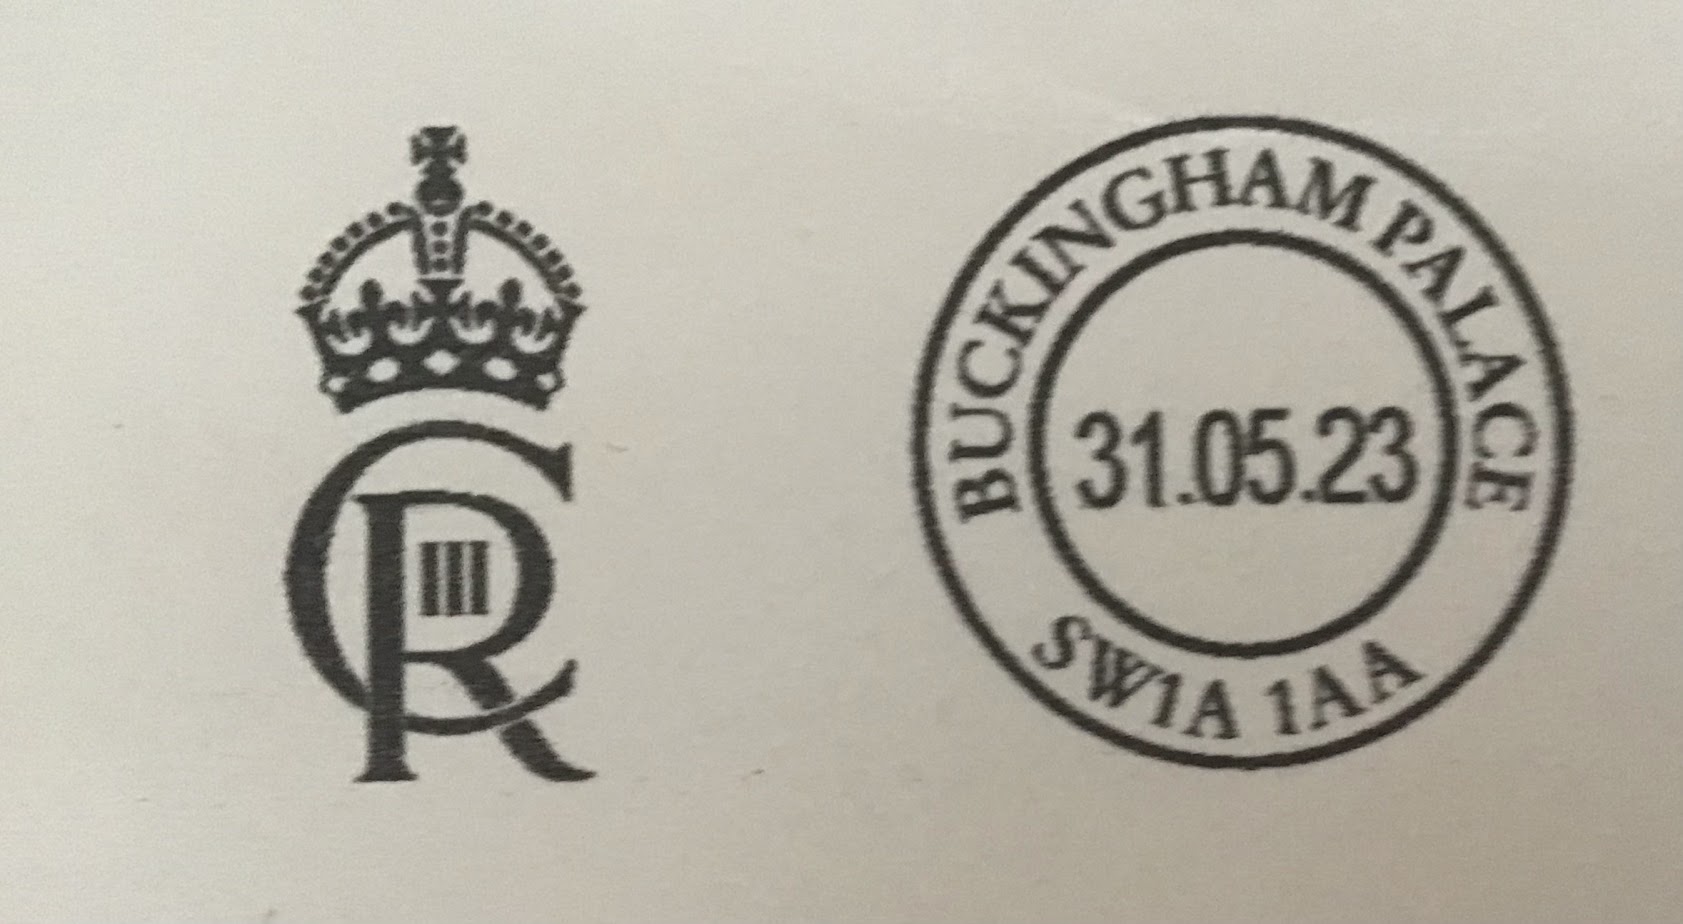 The Royal Postmark